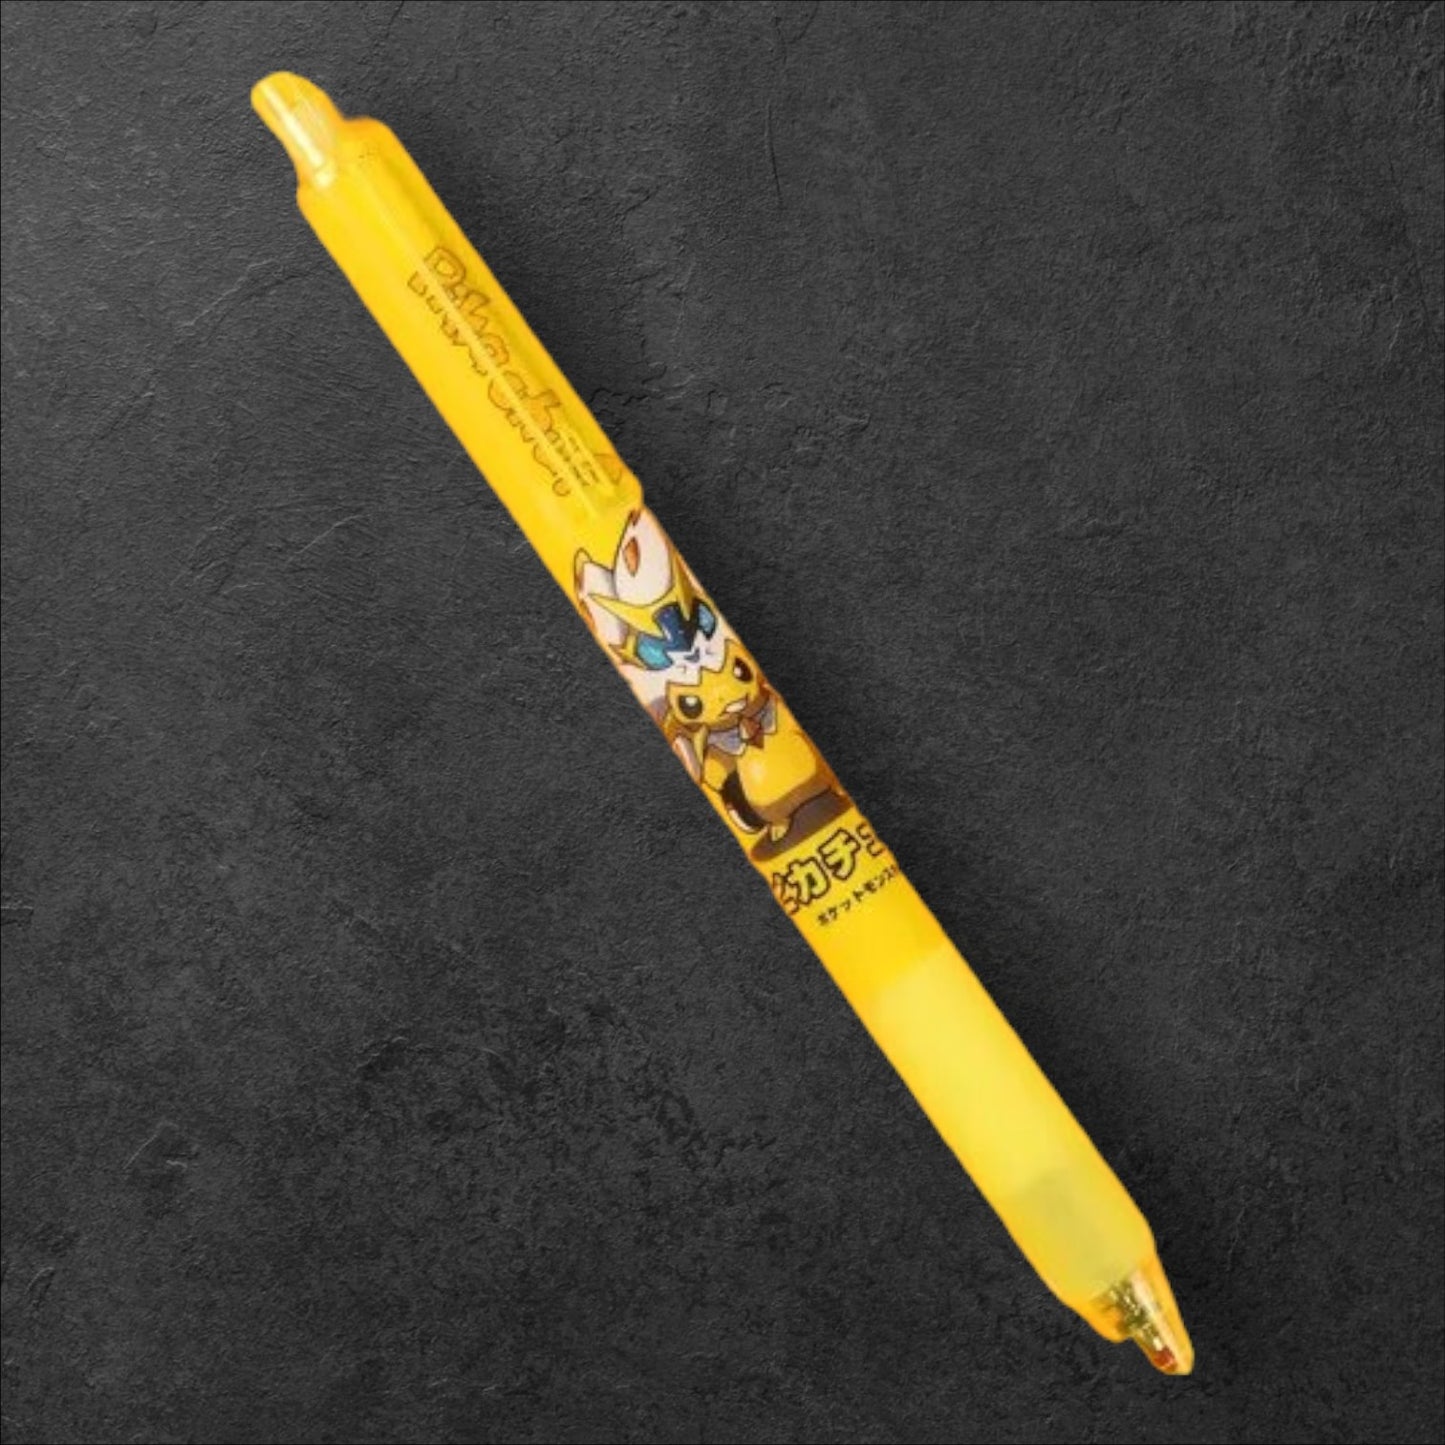 Pokémon Ballpoint Pen